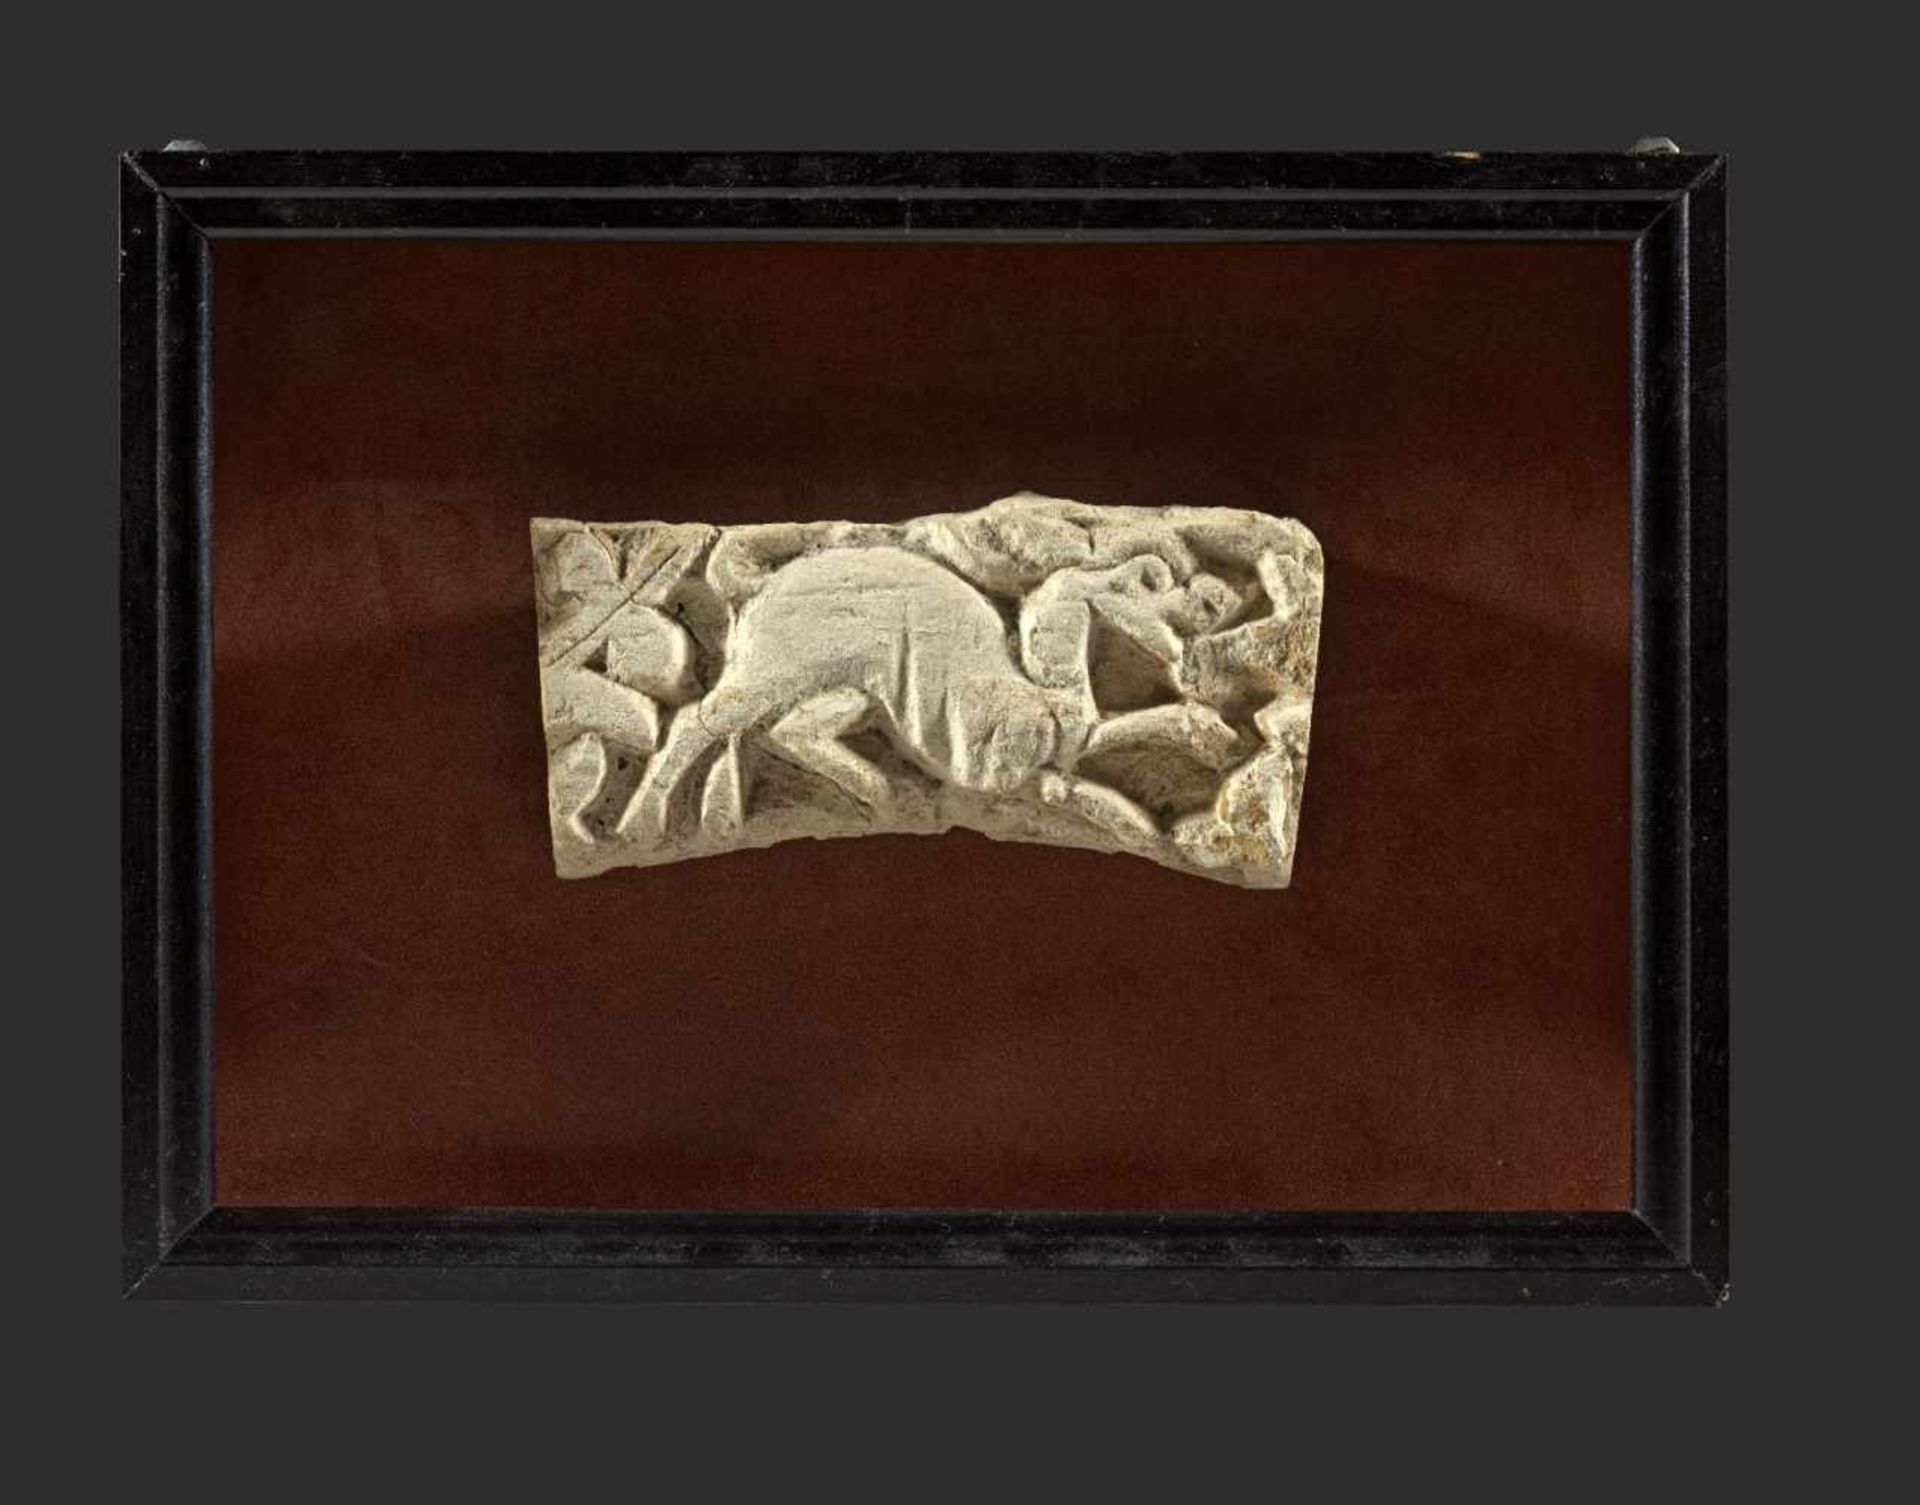 Koptisches Relieffragment. 5. / 6. Jh. n. Chr. Weißer Kalkstein, B 20,5, H 10cm, T 4,5cm. Ausschnitt